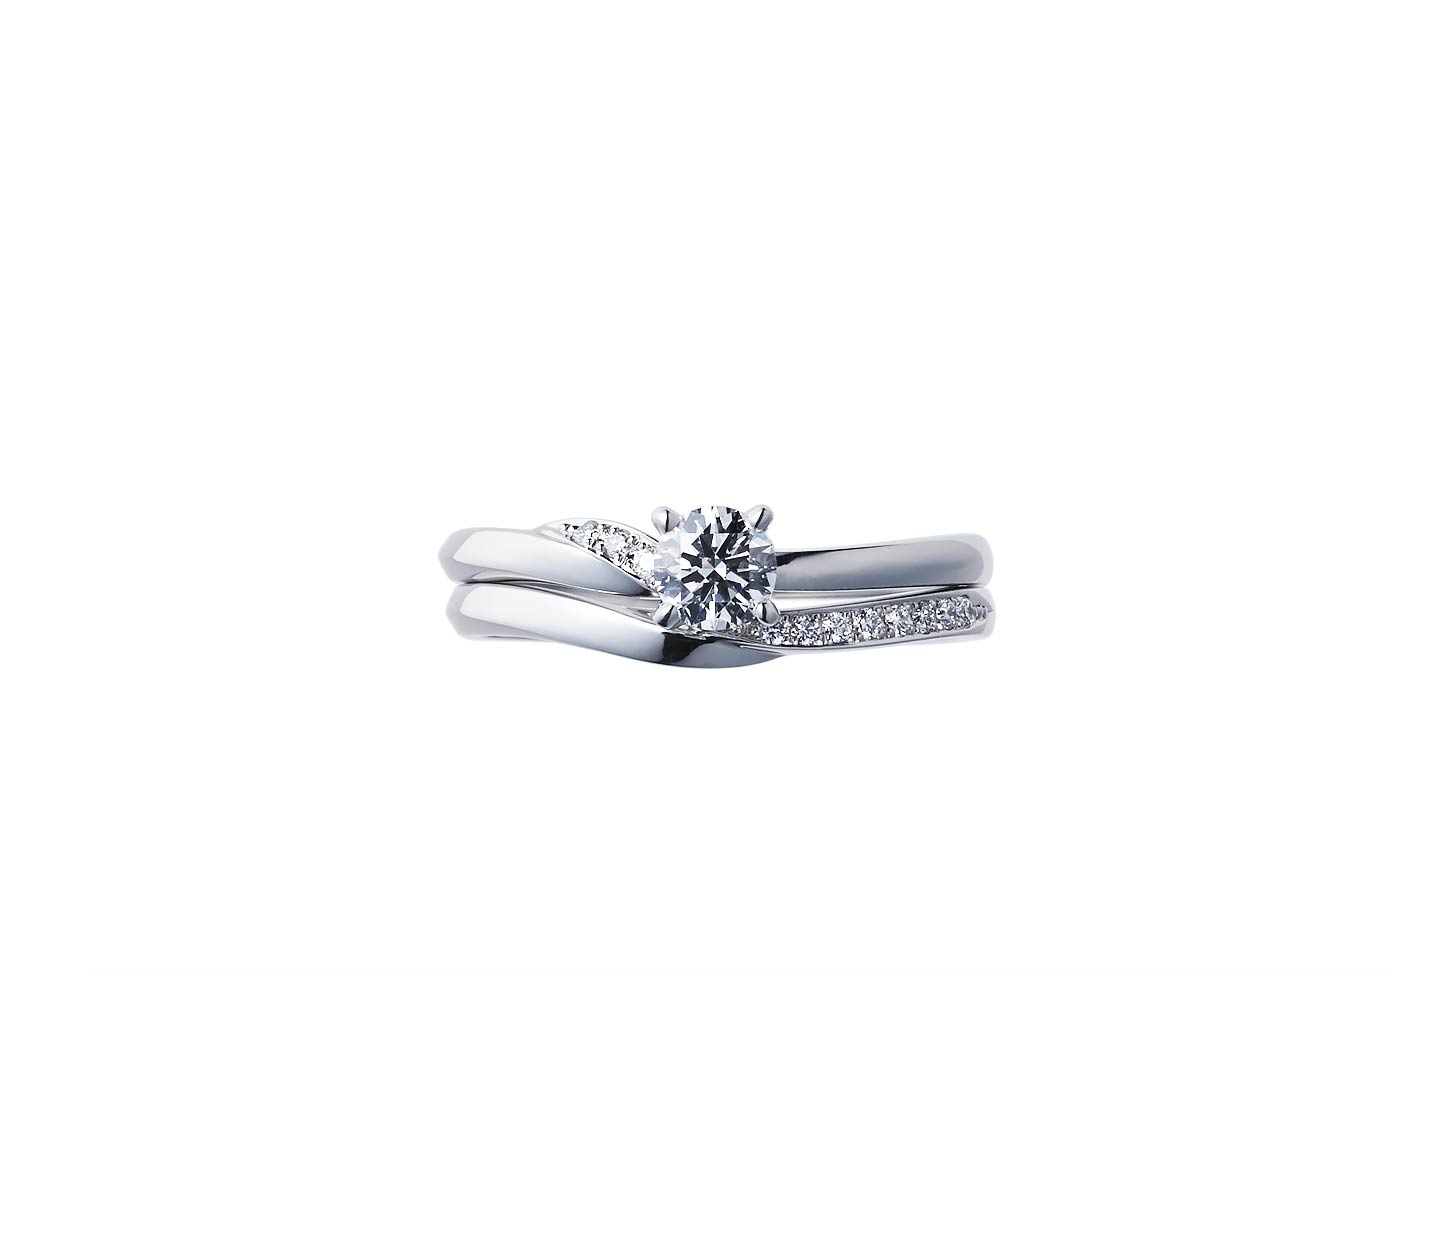 婚約指輪“木洩日” 結婚指輪“せせらぎ”とのセットリング